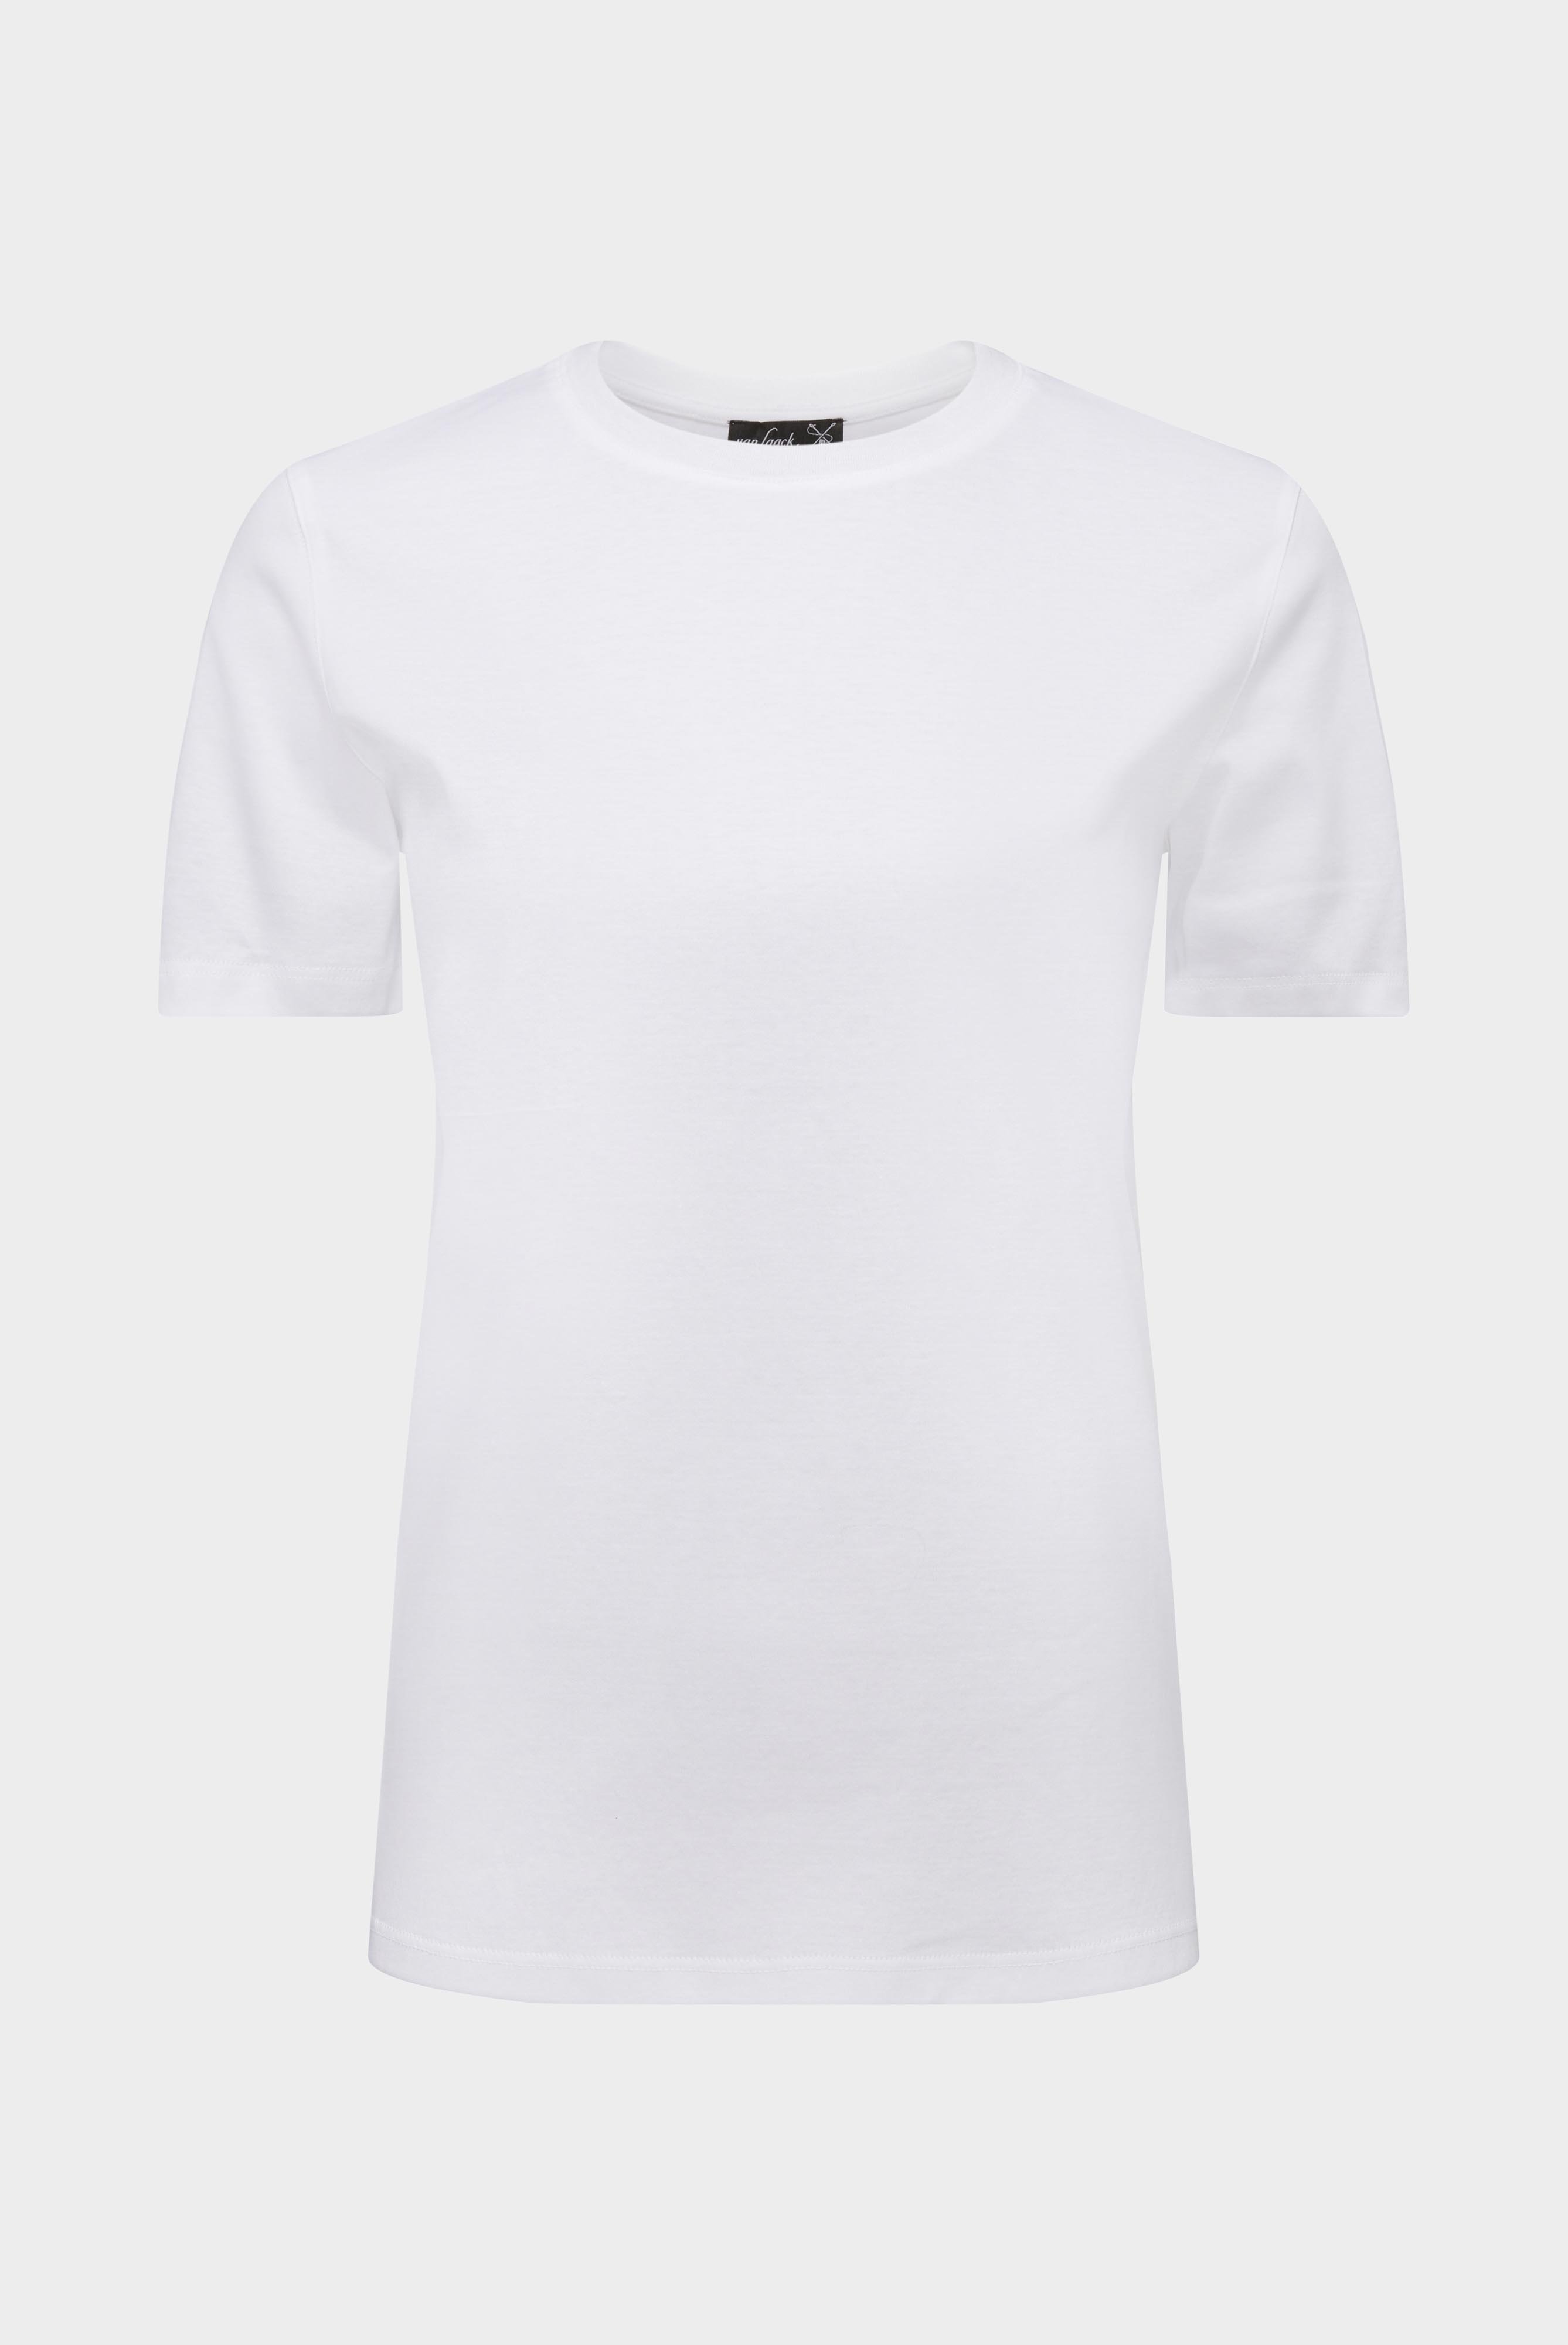 Tops & T-Shirts+Jersey T-Shirt+05.6384.18.180031.000.48